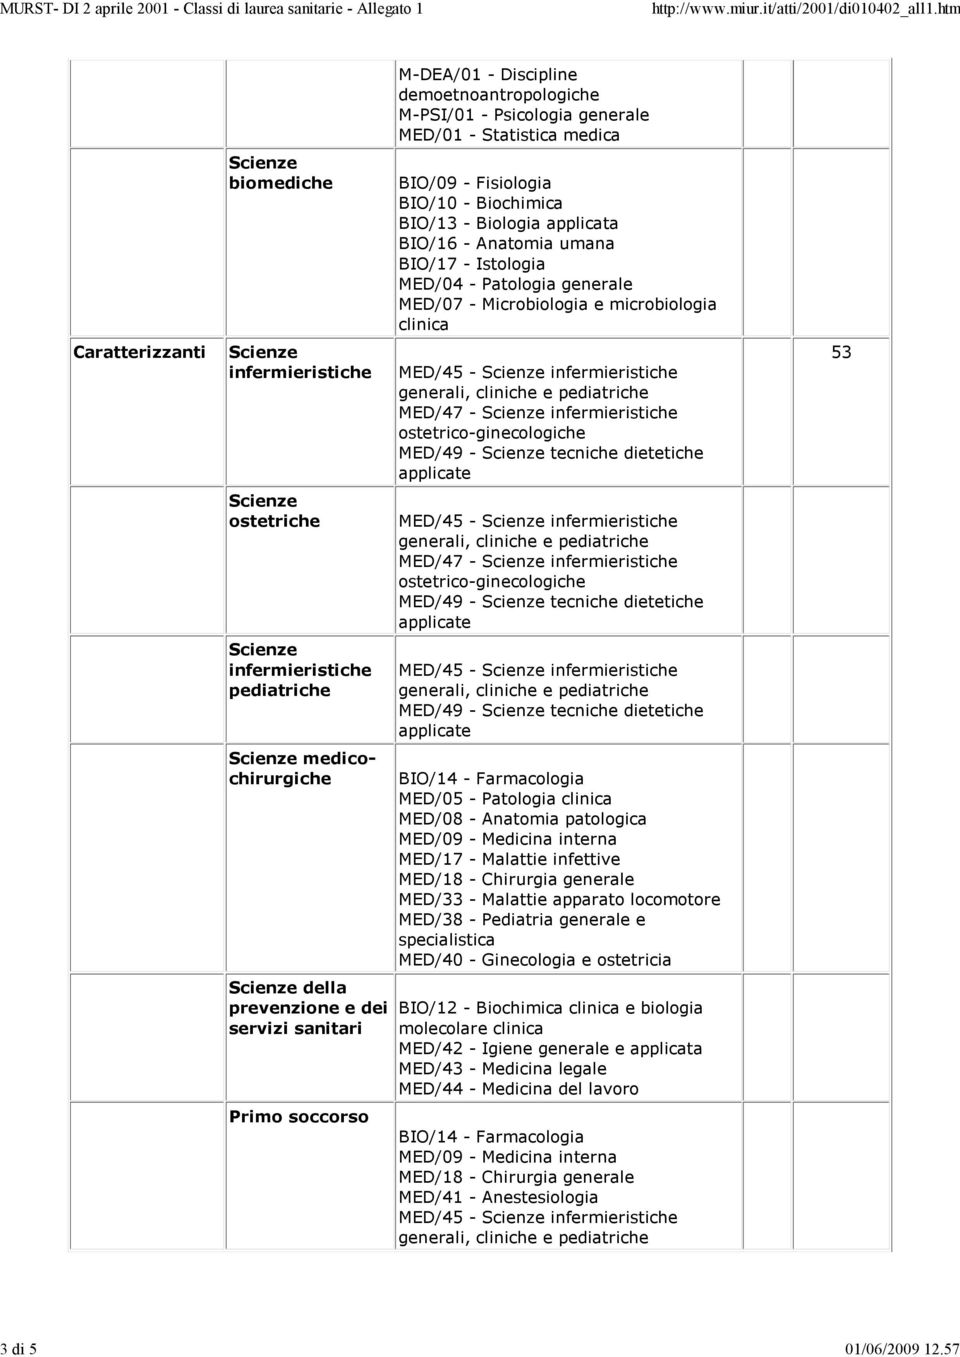 soccorso M-DEA/01 - Discipline demoetnoantropologiche M-PSI/01 - Psicologia generale MED/01 - Statistica medica BIO/09 - Fisiologia BIO/10 - Biochimica BIO/13 - Biologia applicata BIO/16 - Anatomia